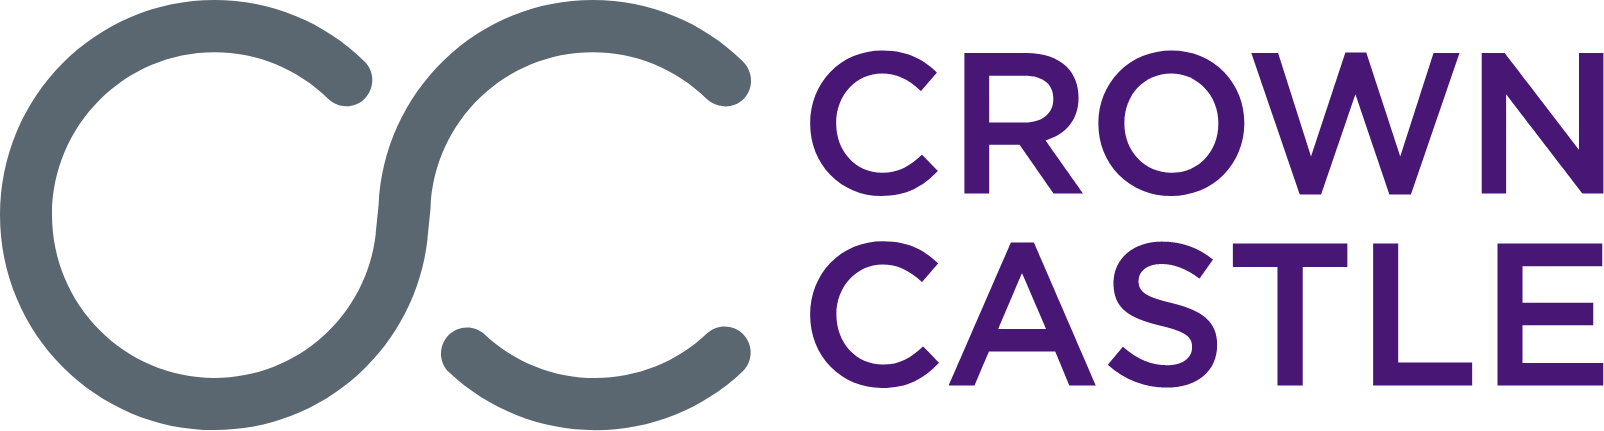 Crown Castle logo large (transparent PNG)